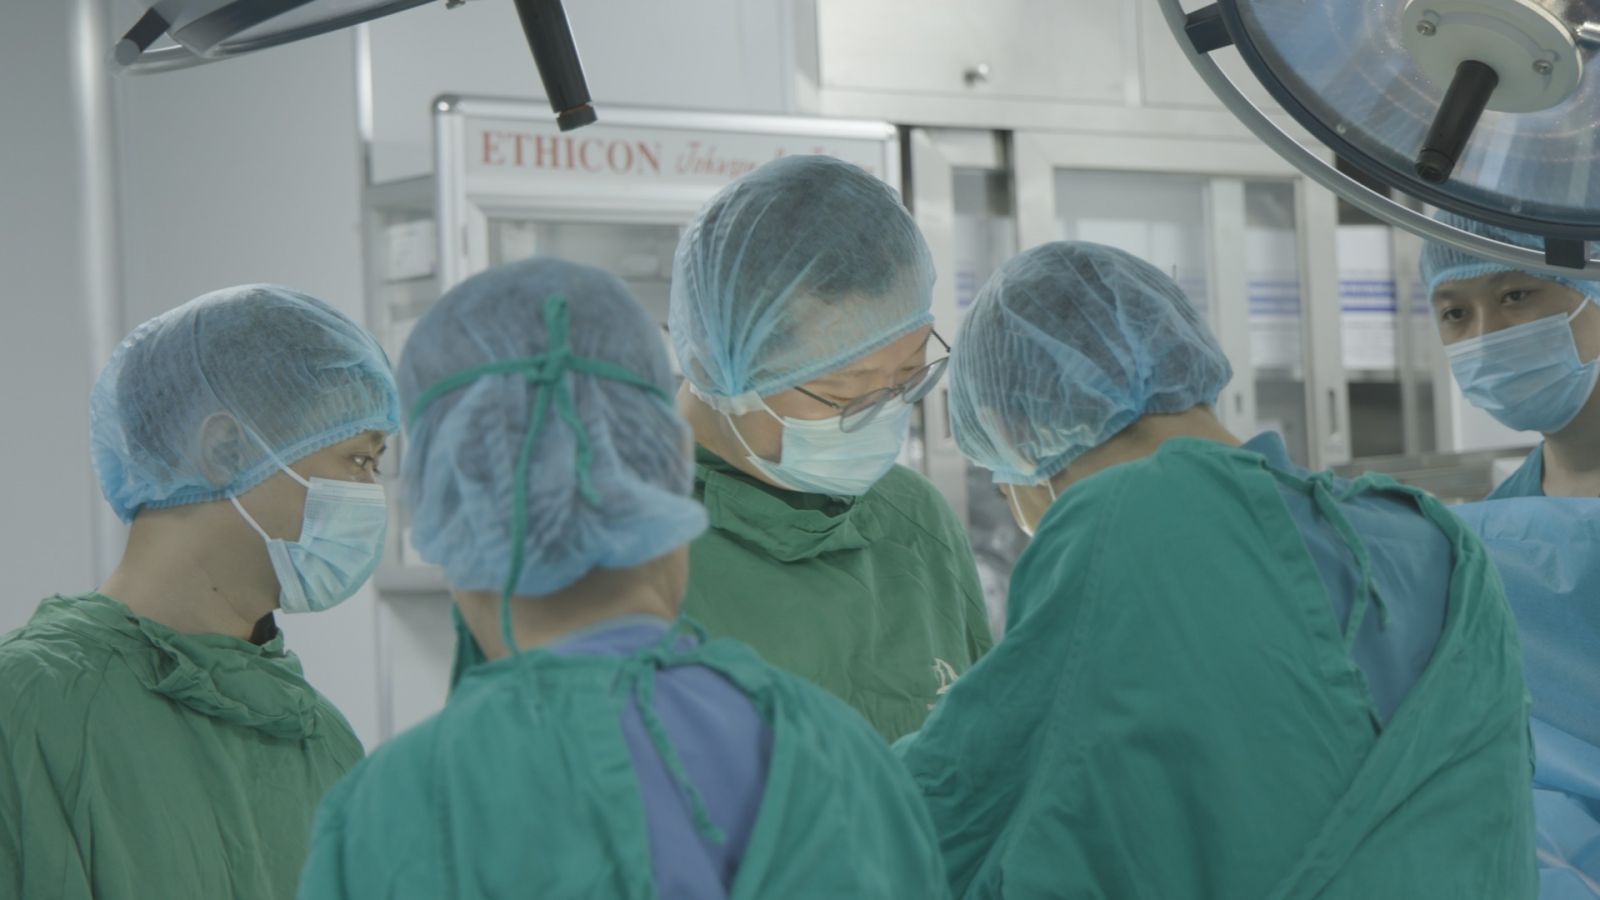 Bác sĩ Park tham dự thực hiện phẫu thuật cấy ghép thể hang nhân tạo- IPP trực tiếp tại Hà Nội, Việt Nam